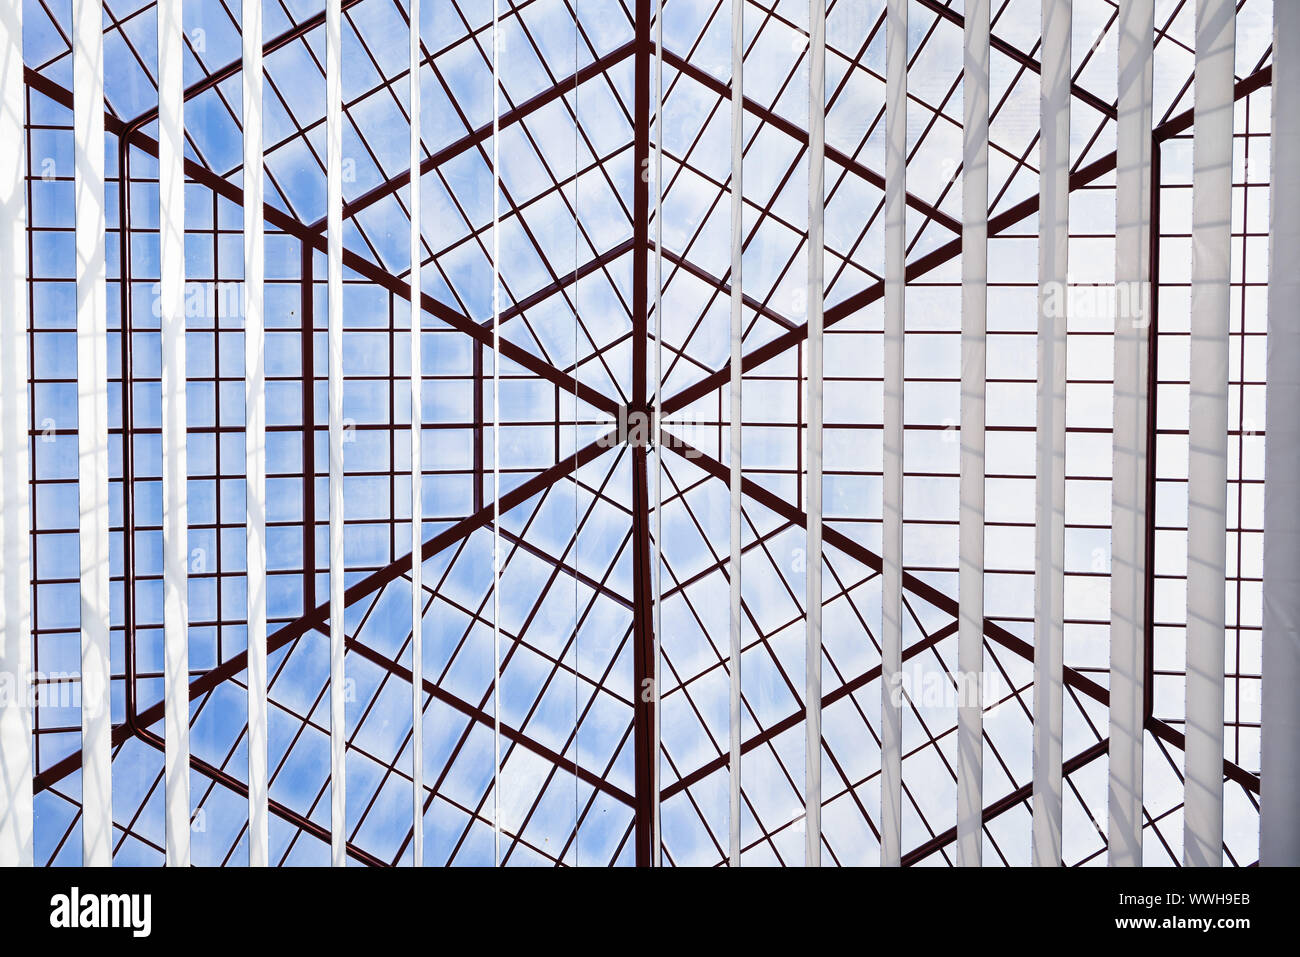 Lucarne de toit en verre d'un atrium, avec structure géométrique dans un style architectural moderne et contemporain Banque D'Images